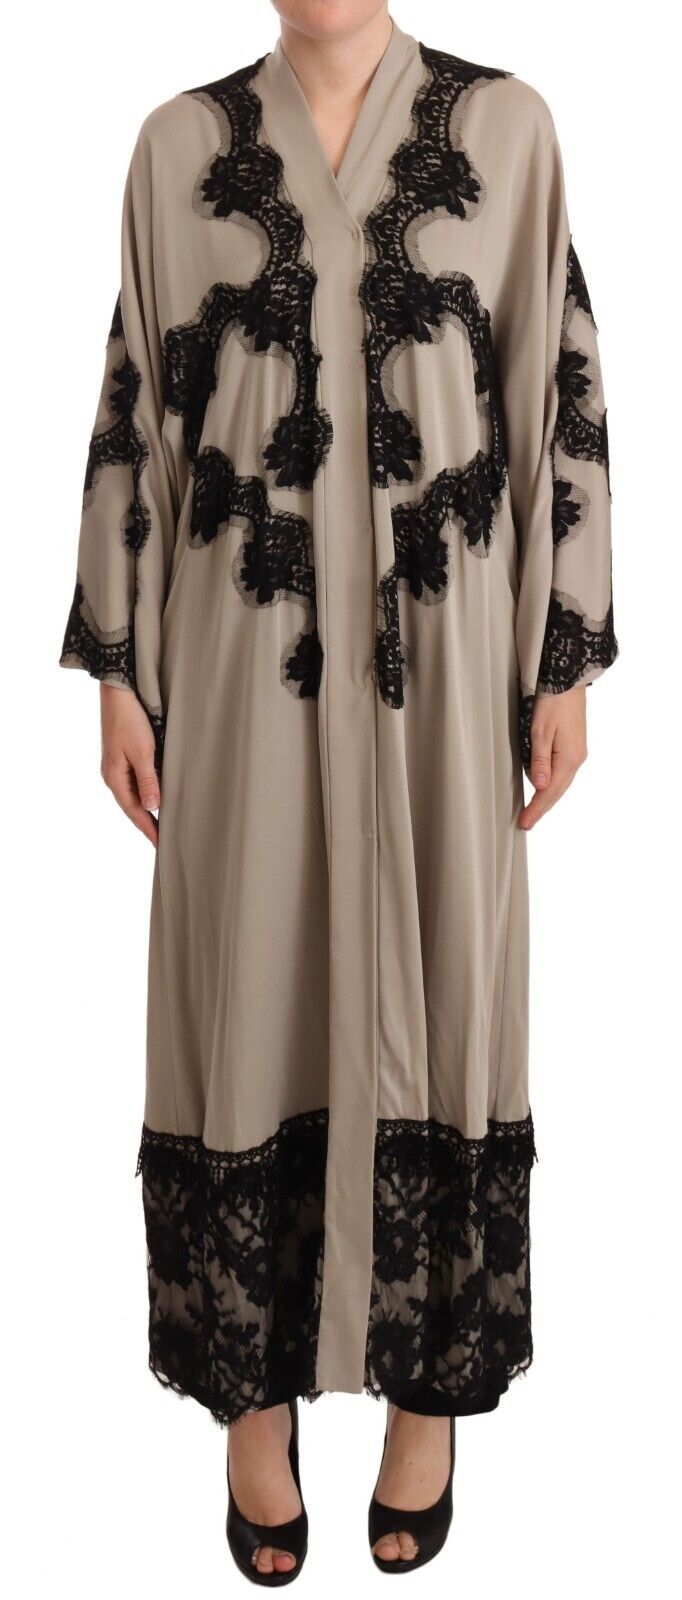 Dolce & Gabbana Beige Silk Lace Abaya Long Kaftan Women's Dress